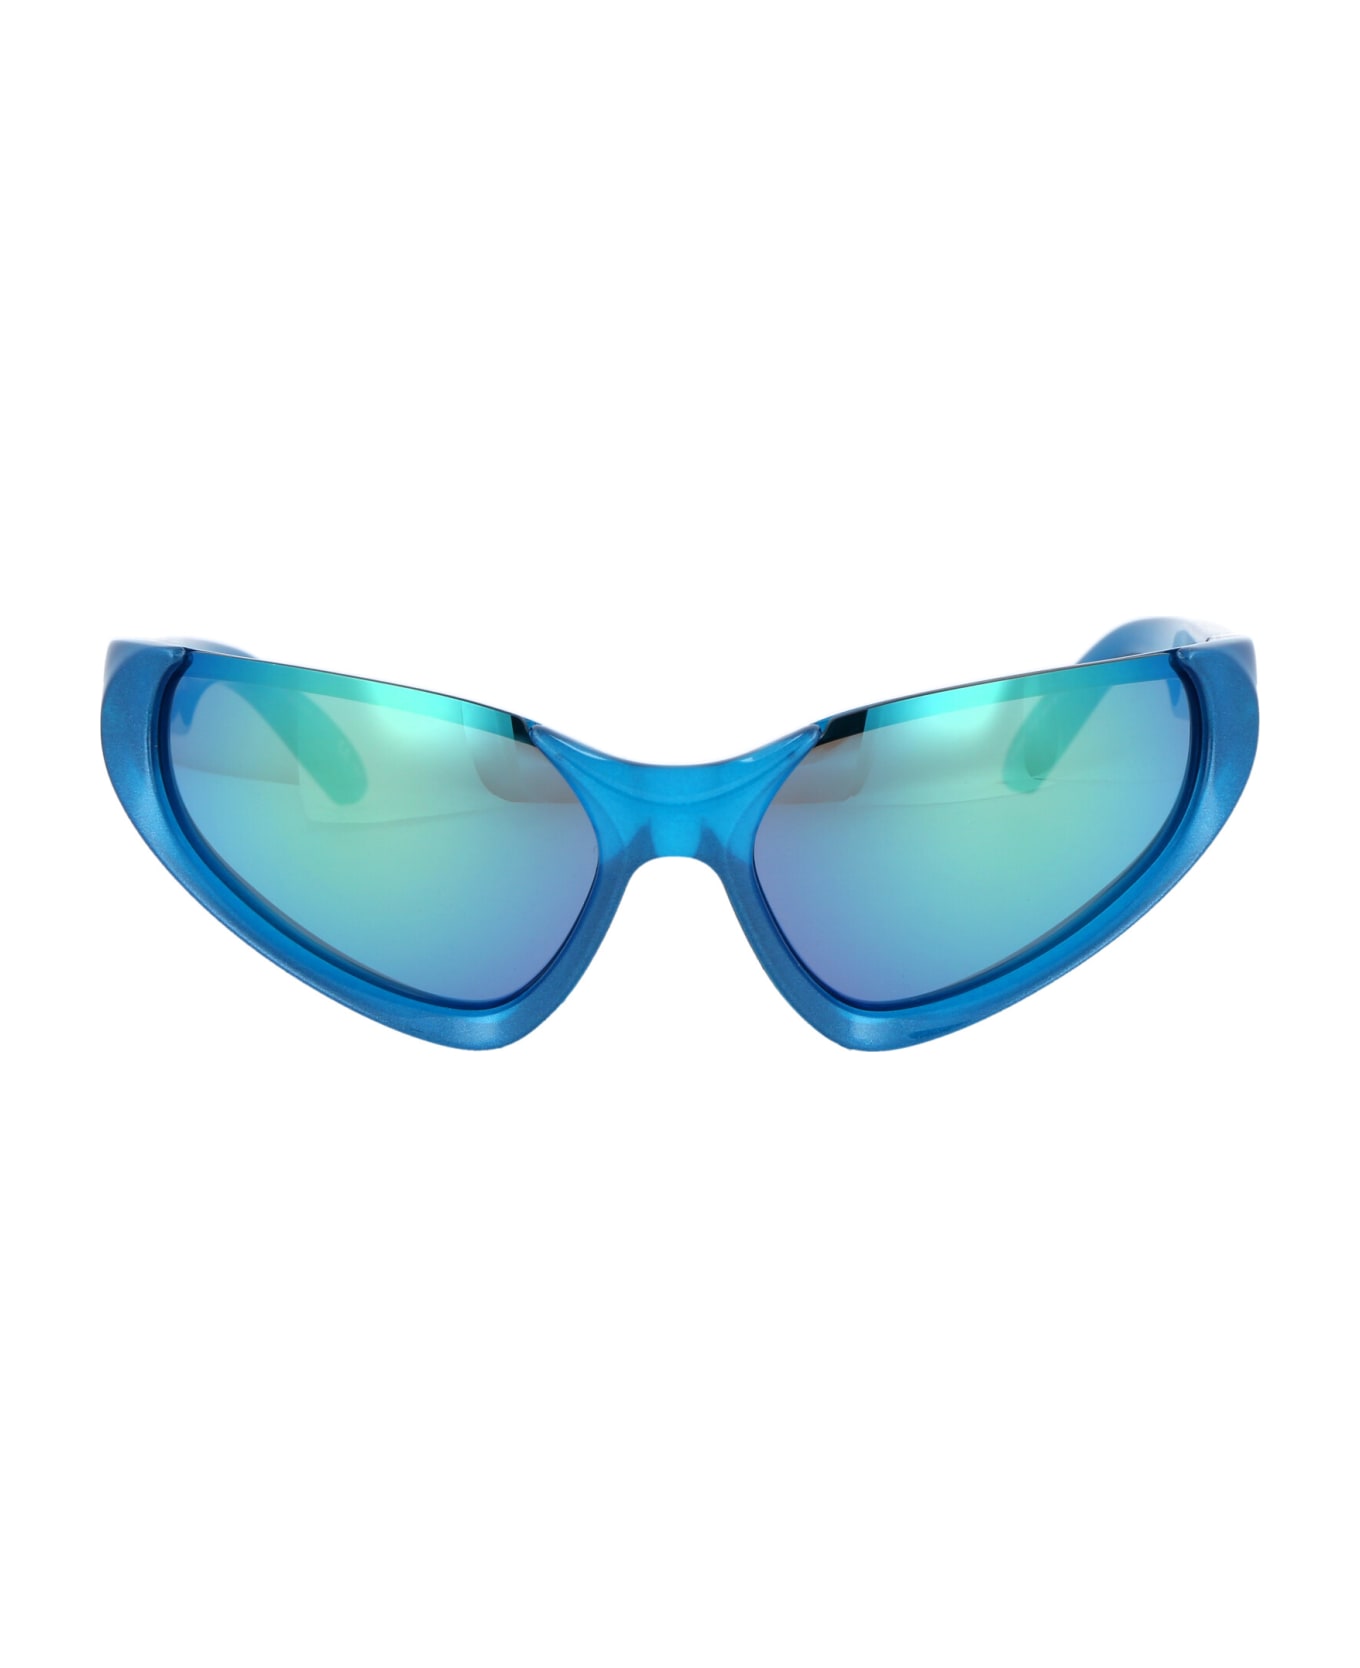 Balenciaga Eyewear Bb0202s Sunglasses - 003 LIGHT BLUE LIGHT BLUE GREEN